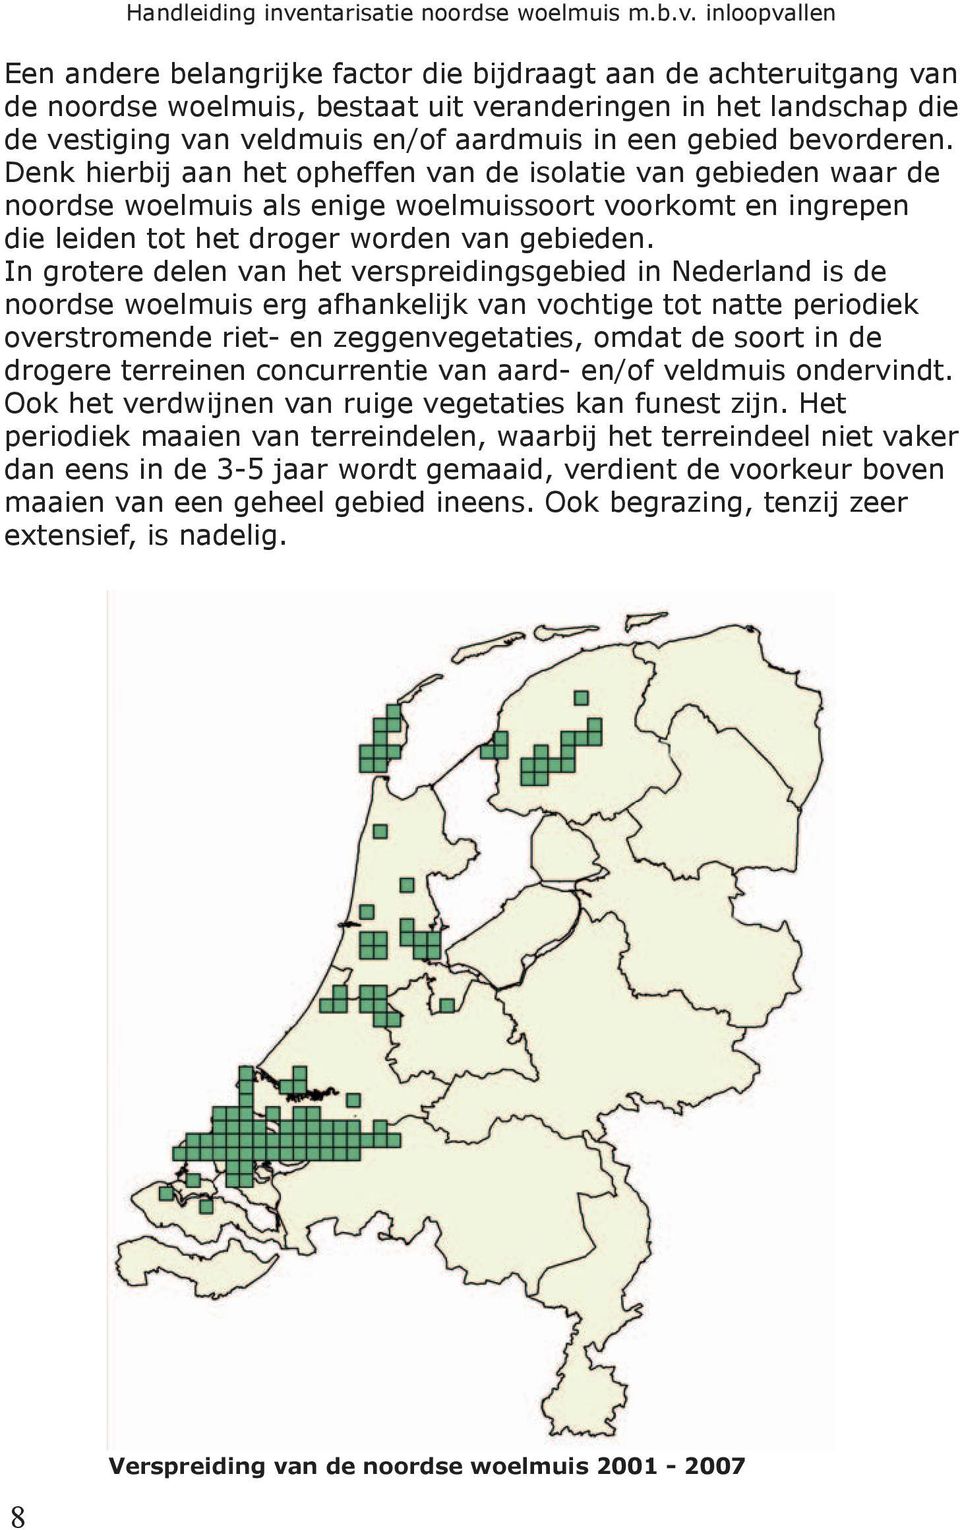 In grotere delen van het verspreidingsgebied in Nederland is de noordse woelmuis erg afhankelijk van vochtige tot natte periodiek overstromende riet- en zeggenvegetaties, omdat de soort in de drogere